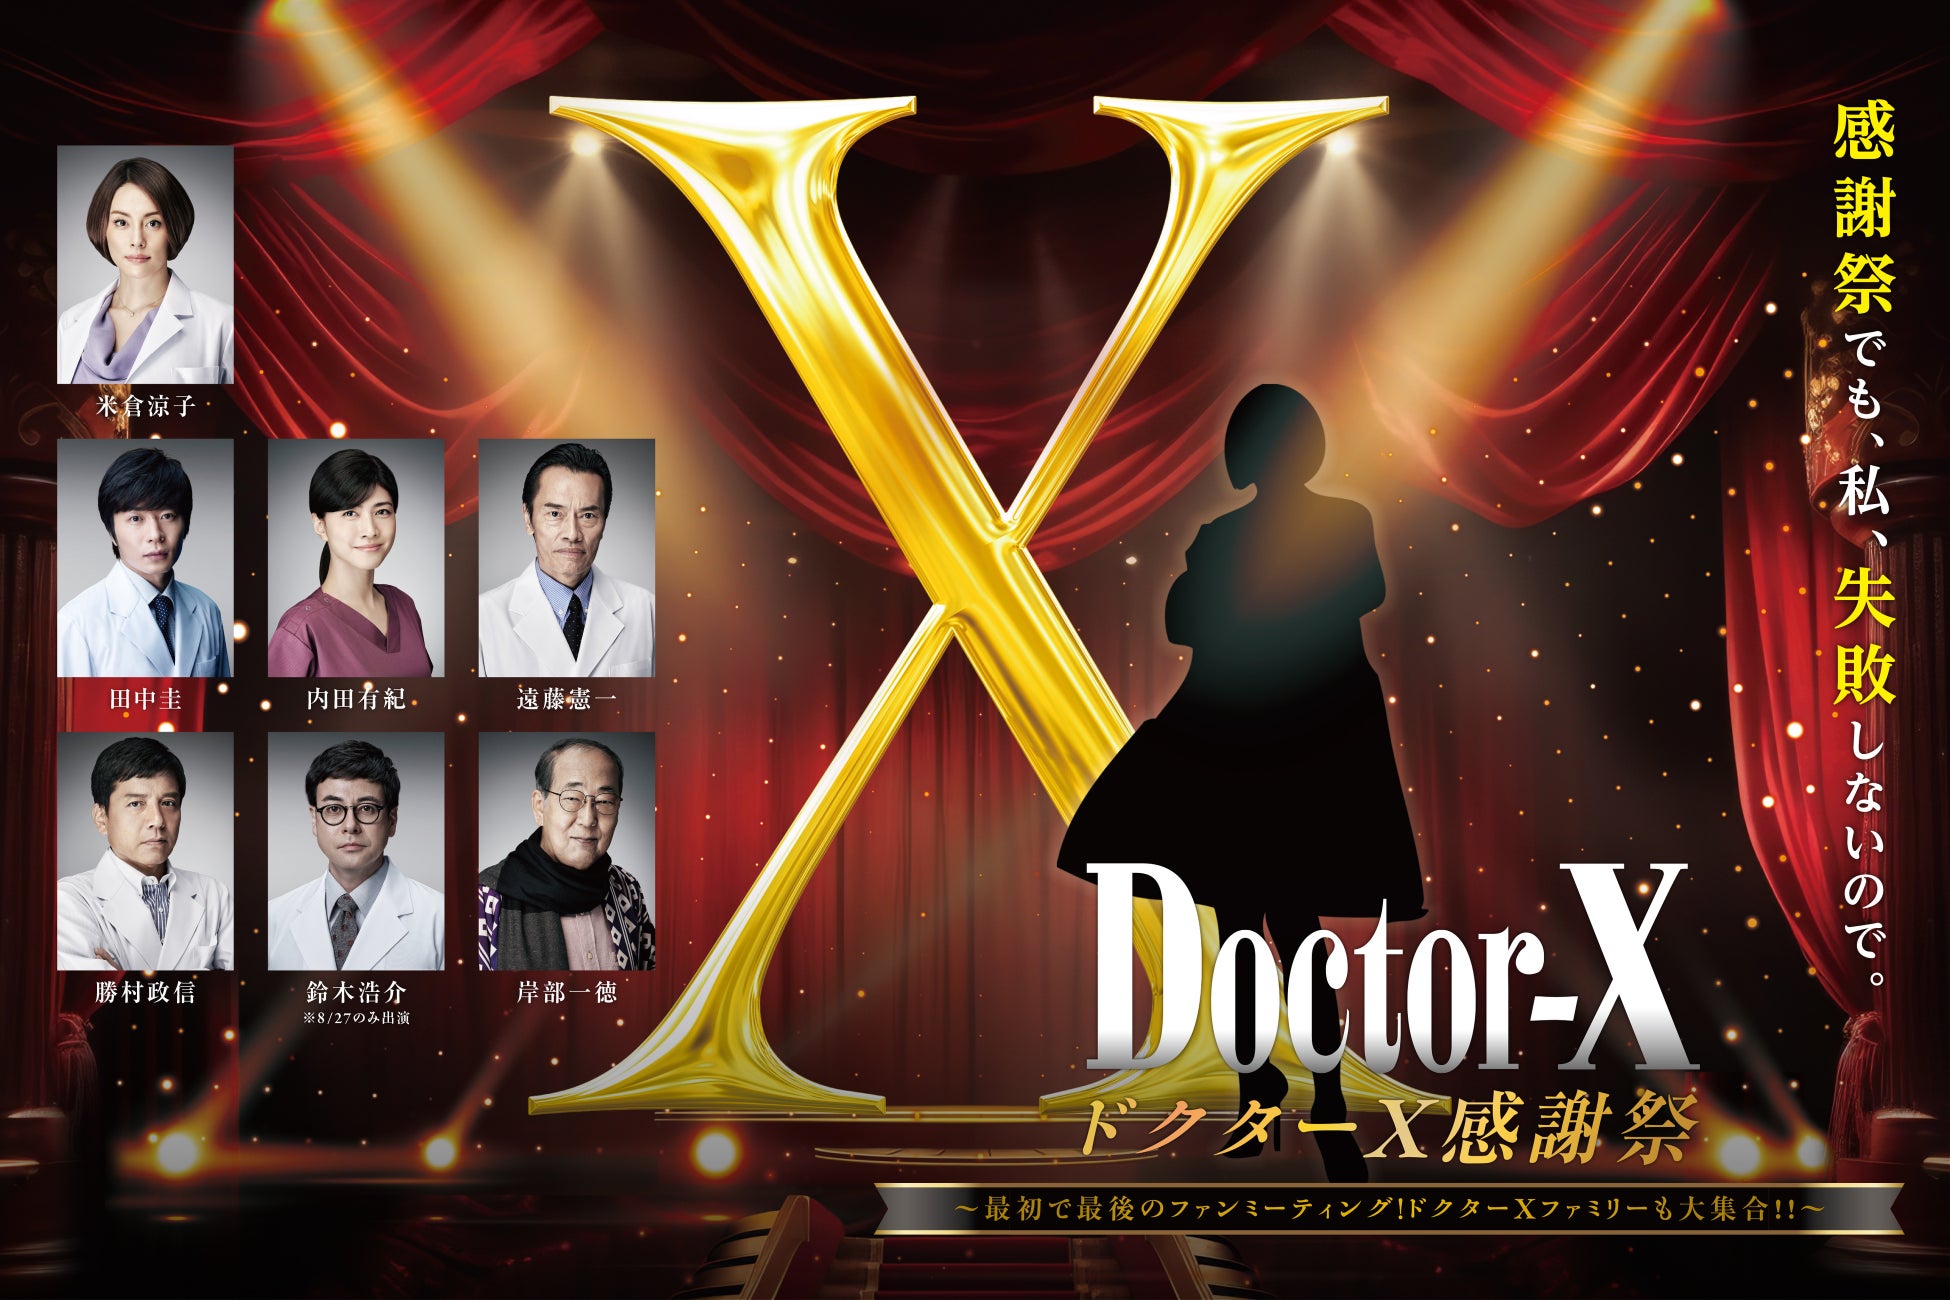 国民的大ヒットドラマ『ドクターX』初の映画化！ファンへの感謝を込めて最初で最後のファンミーティングが開催決定！